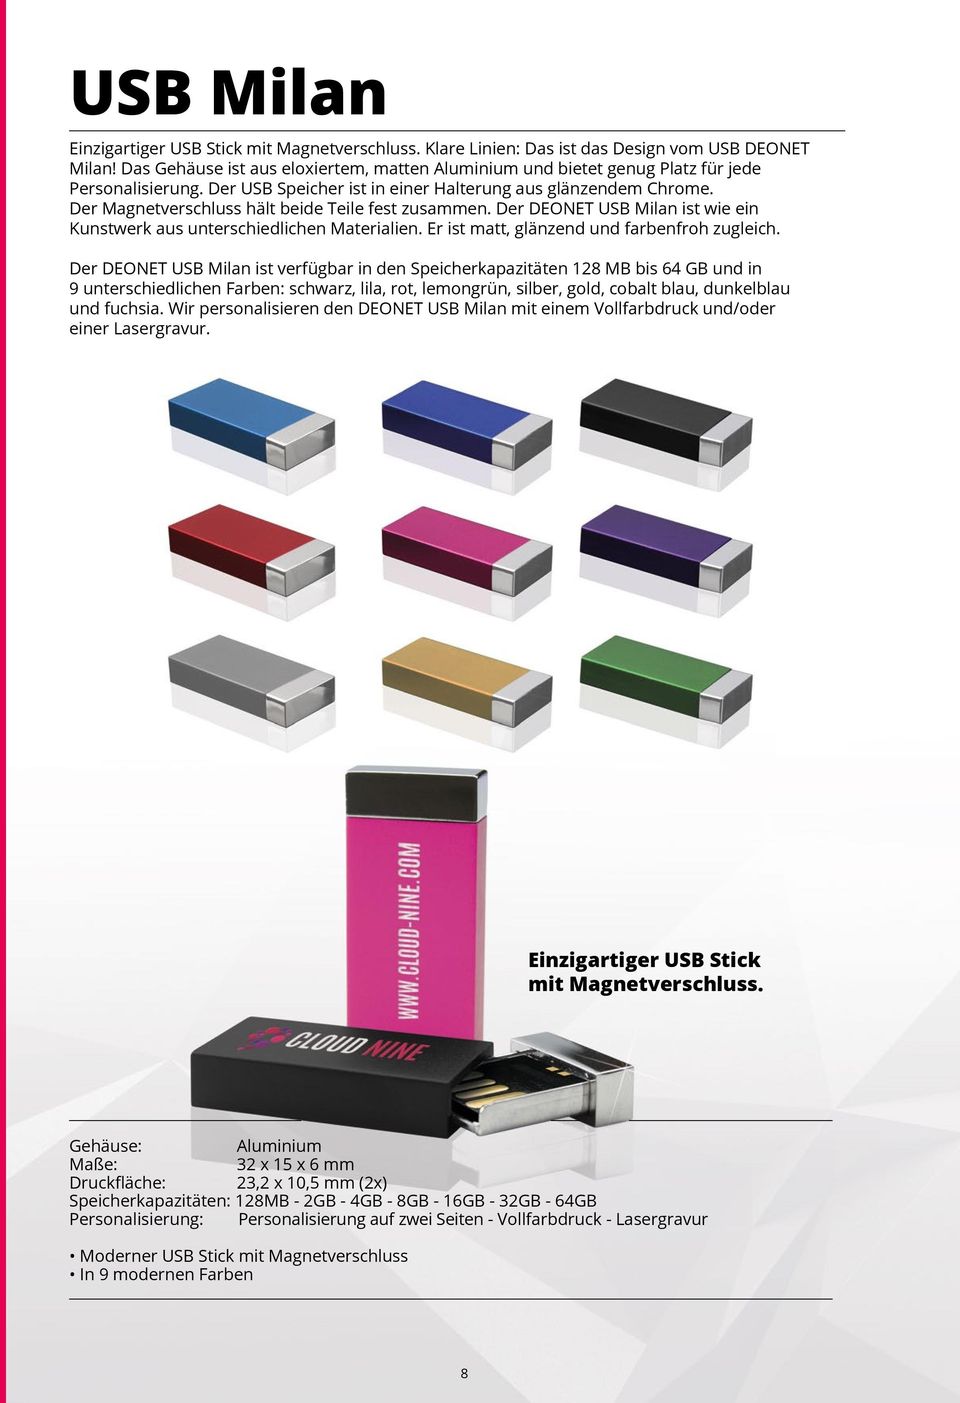 Der Magnetverschluss hält beide Teile fest zusammen. Der DEONET USB Milan ist wie ein Kunstwerk aus unterschiedlichen Materialien. Er ist matt, glänzend und farbenfroh zugleich.